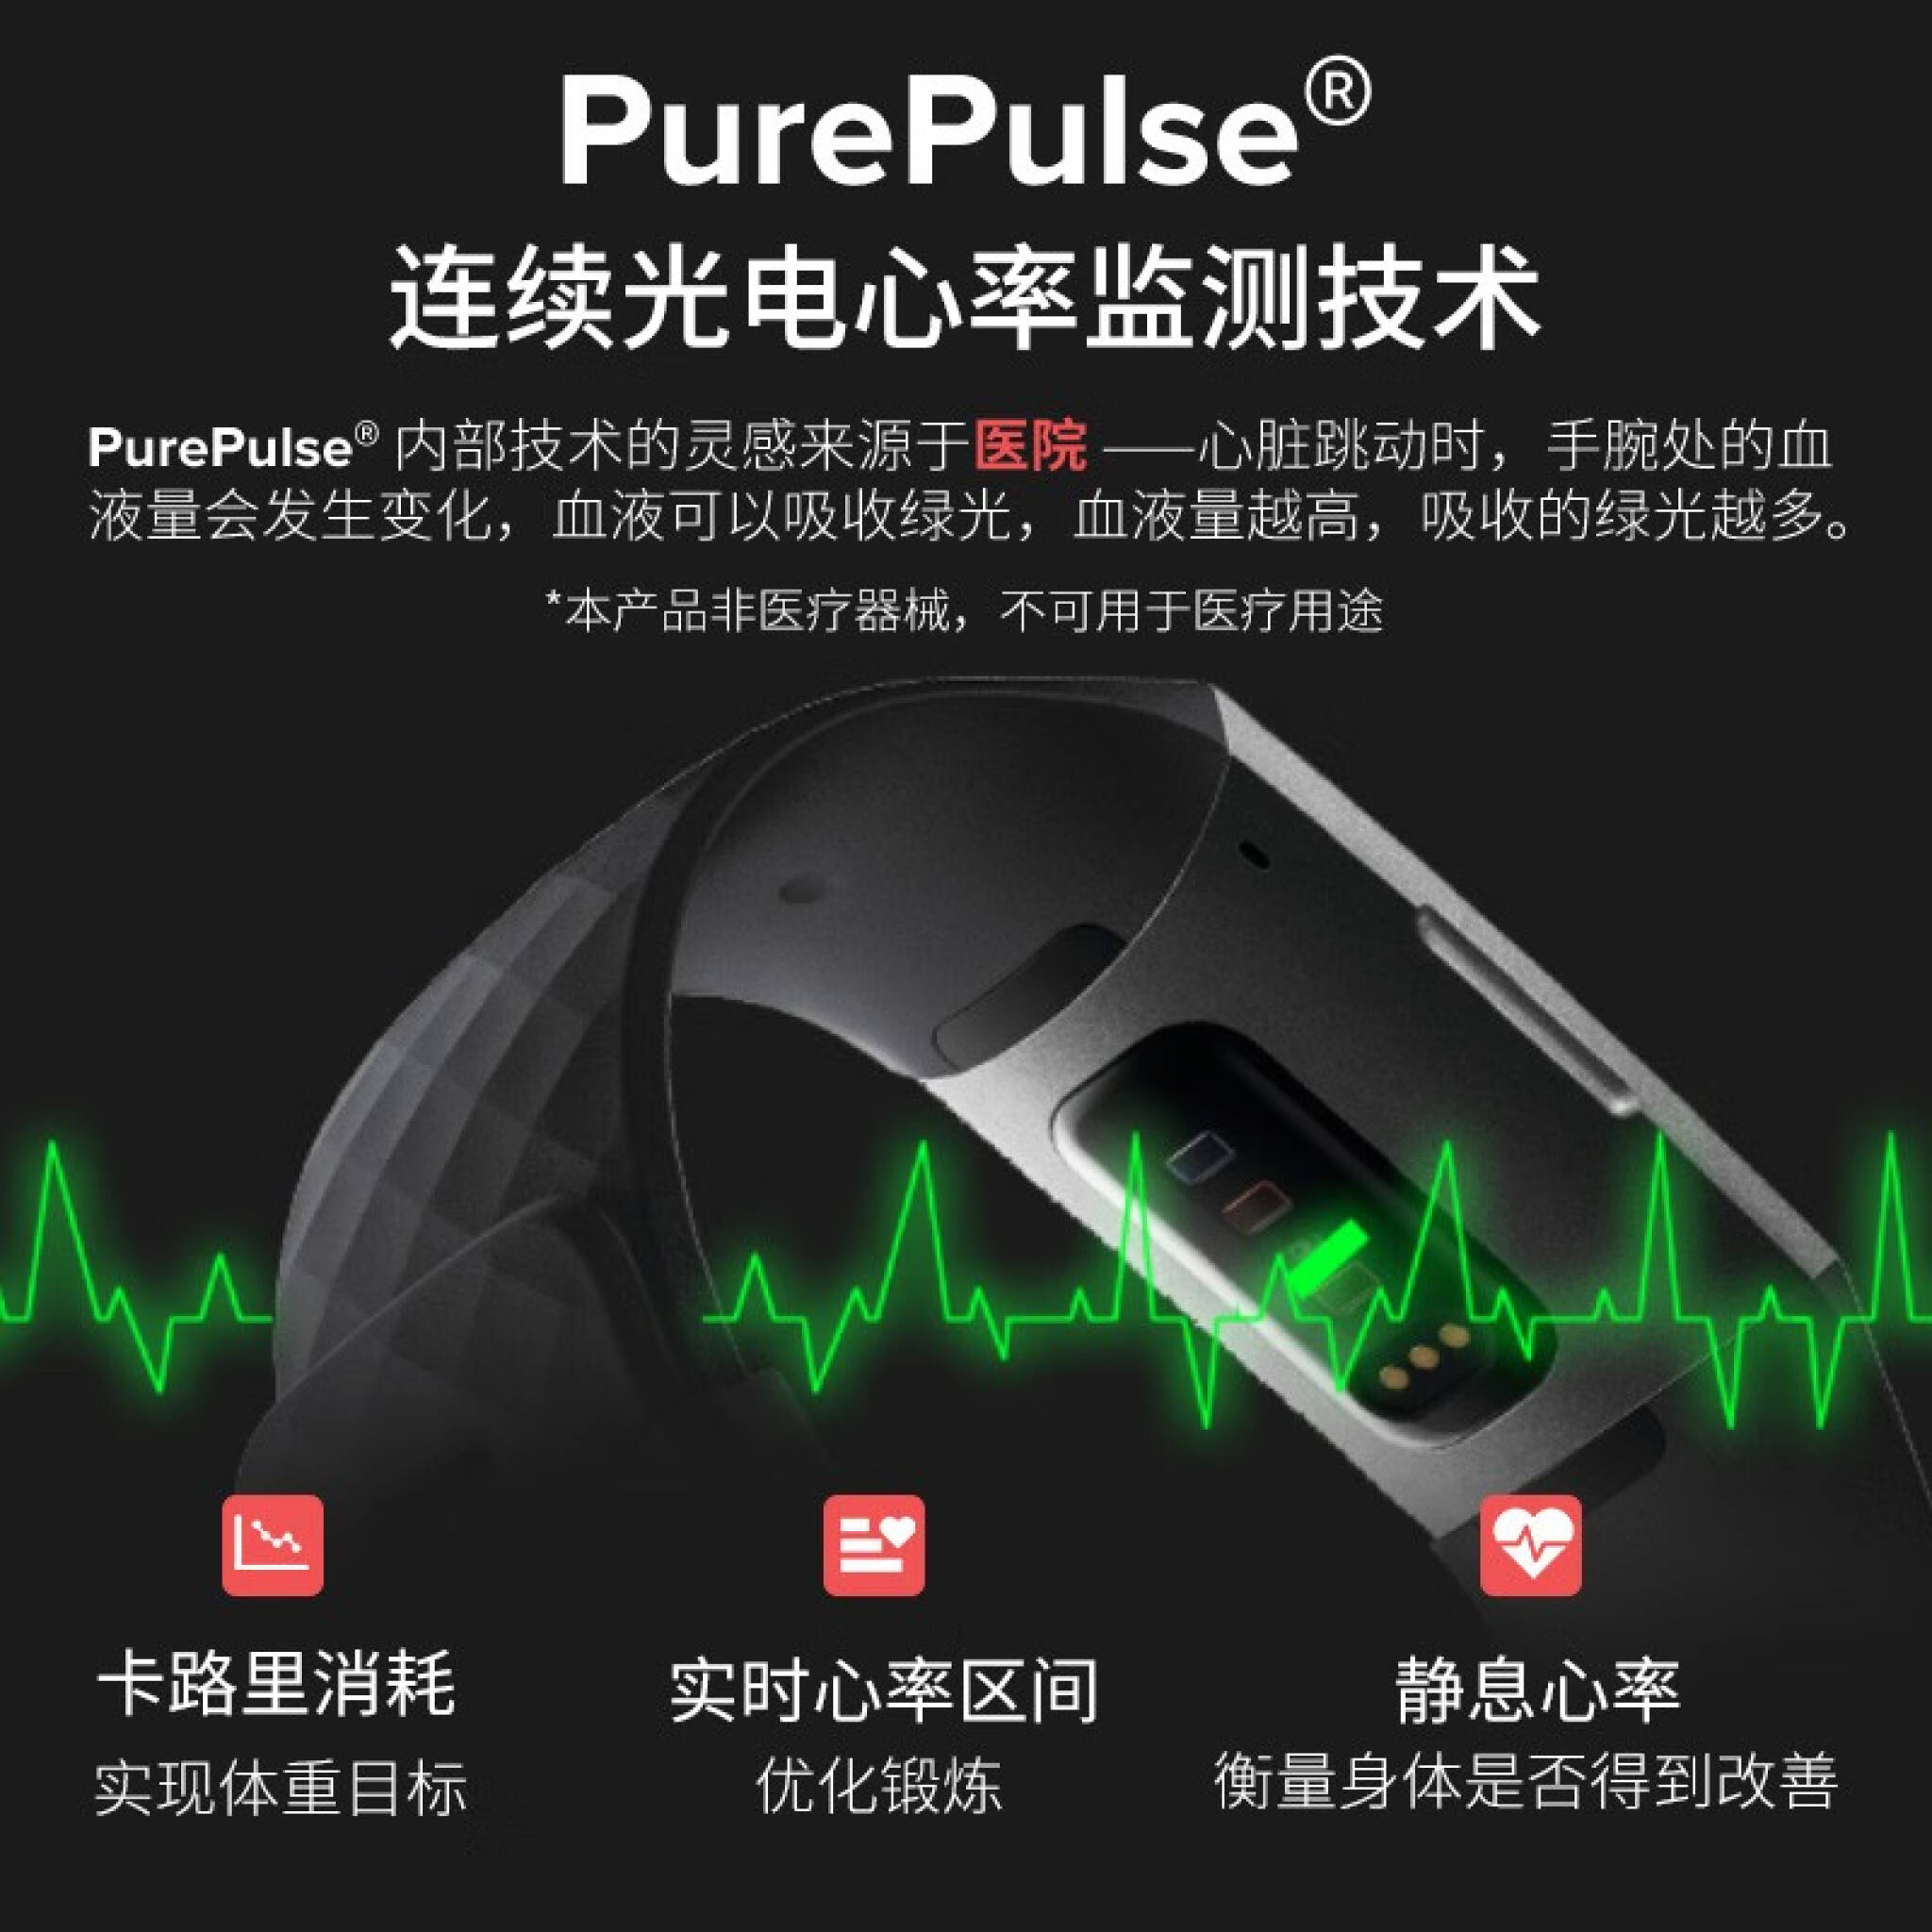 Fitbit Charge 4 特制版智能手环户外运动手环自动锻炼识别连续心率监测 